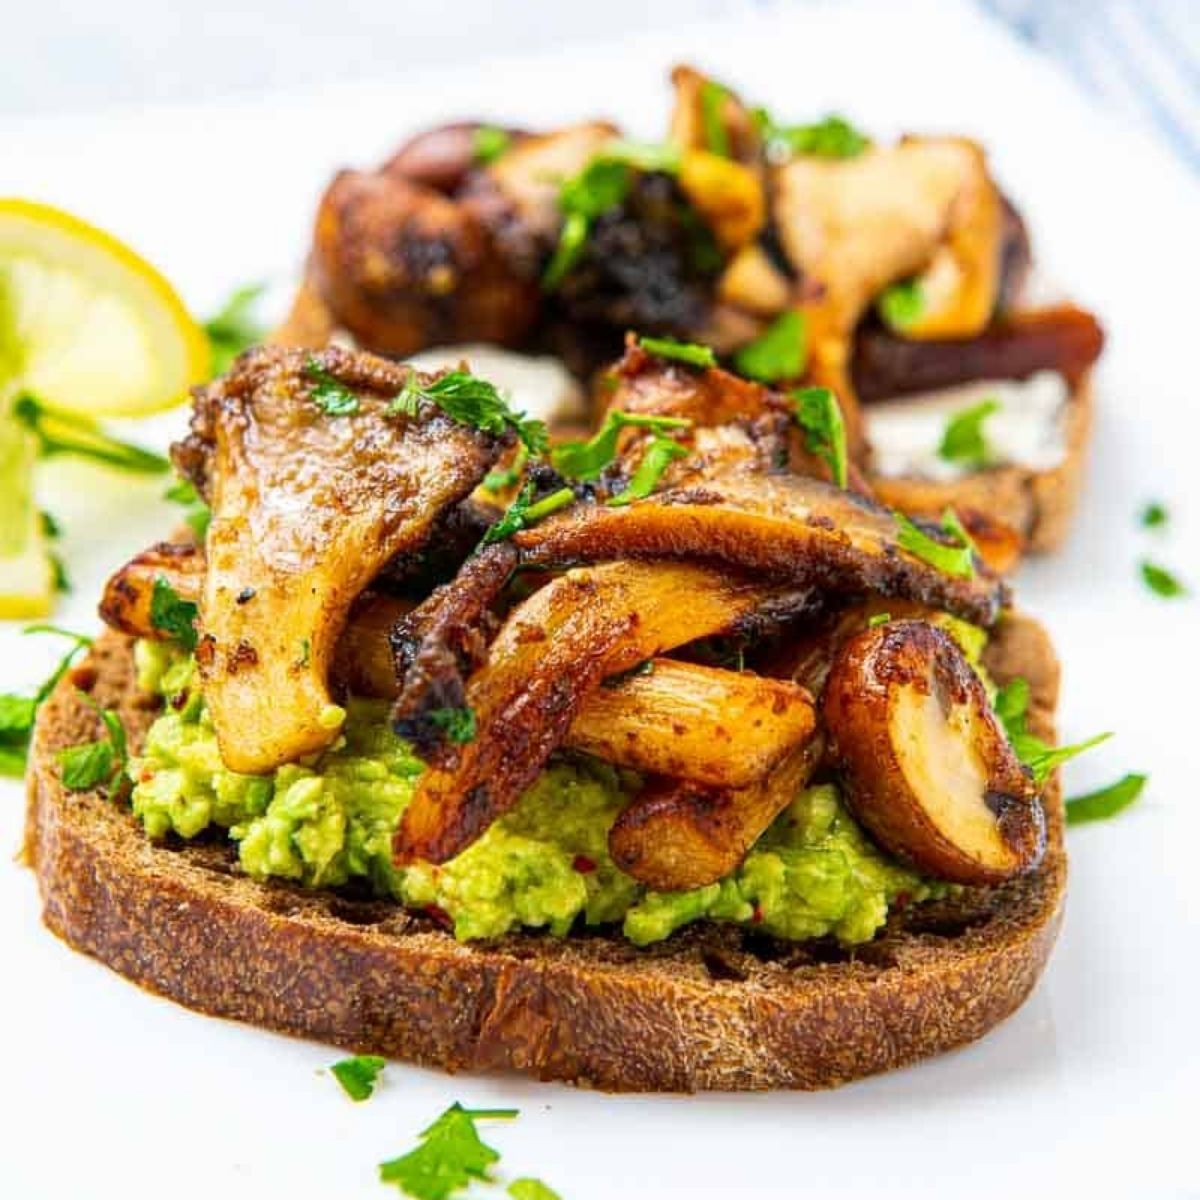 Oyster Mushrooms & Avocado on Toast